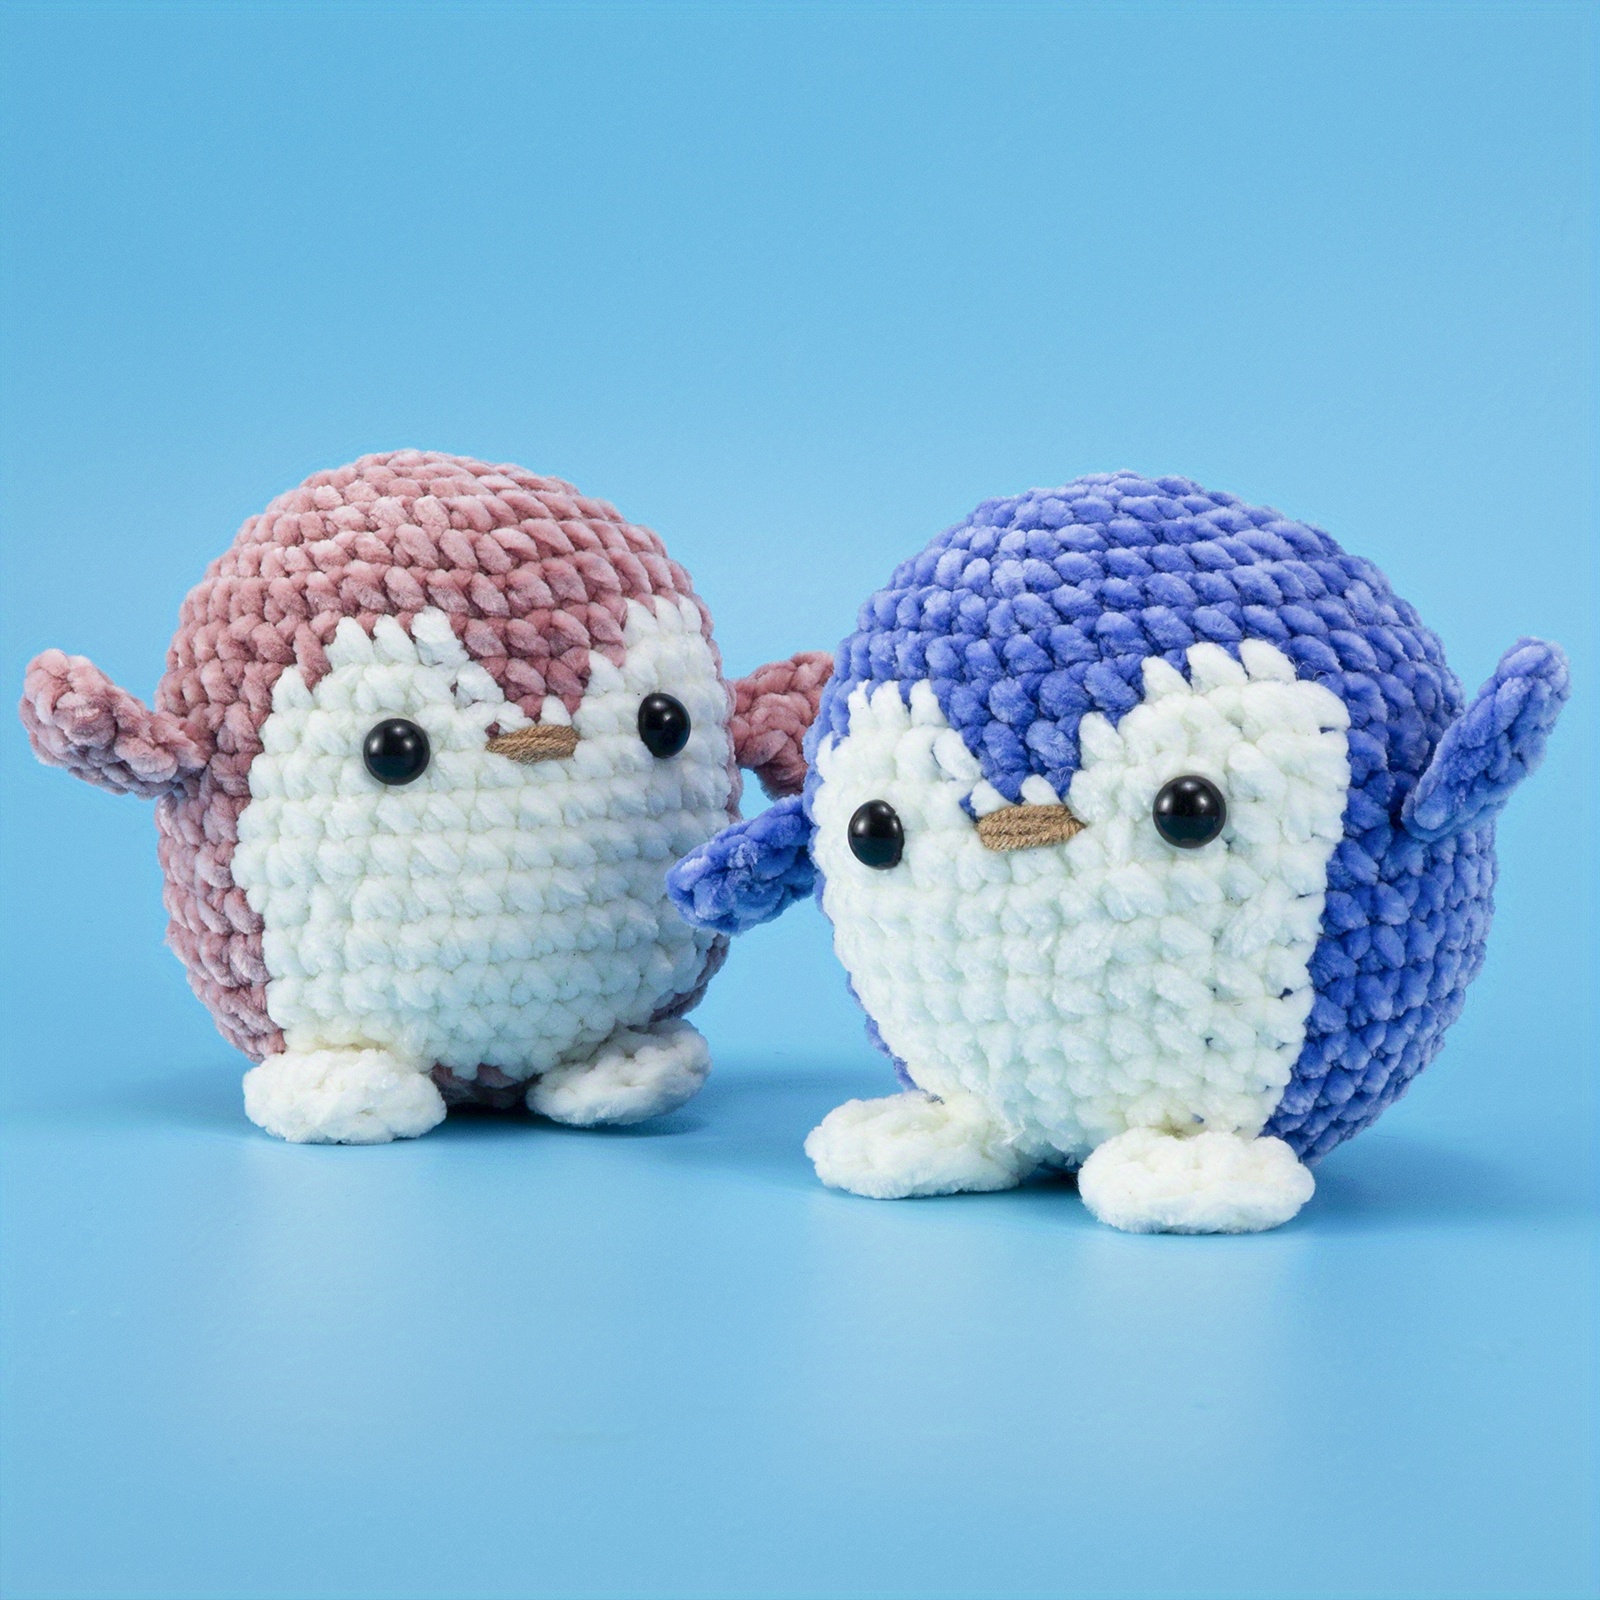  Beginner Mr. Penguin Crochet Kit - Easy Crochet